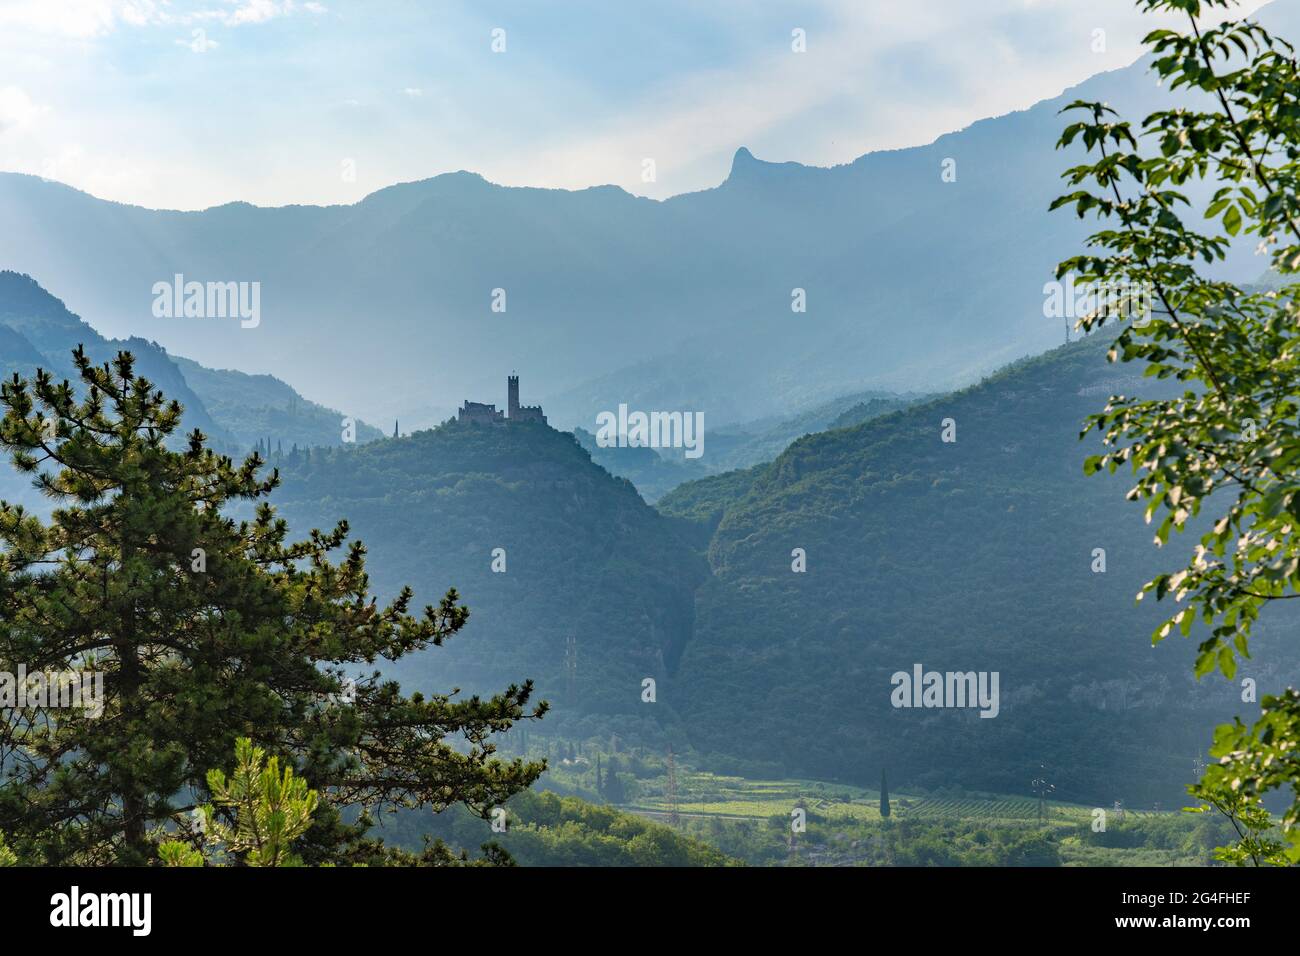 Landschaft mit altem Schloss als Silhoutte an einem nebligen Morgen im Sarca-Tal in der Nähe des Dorfes Dro, in der Nähe des Gardasees, Tentino, Italien Stockfoto